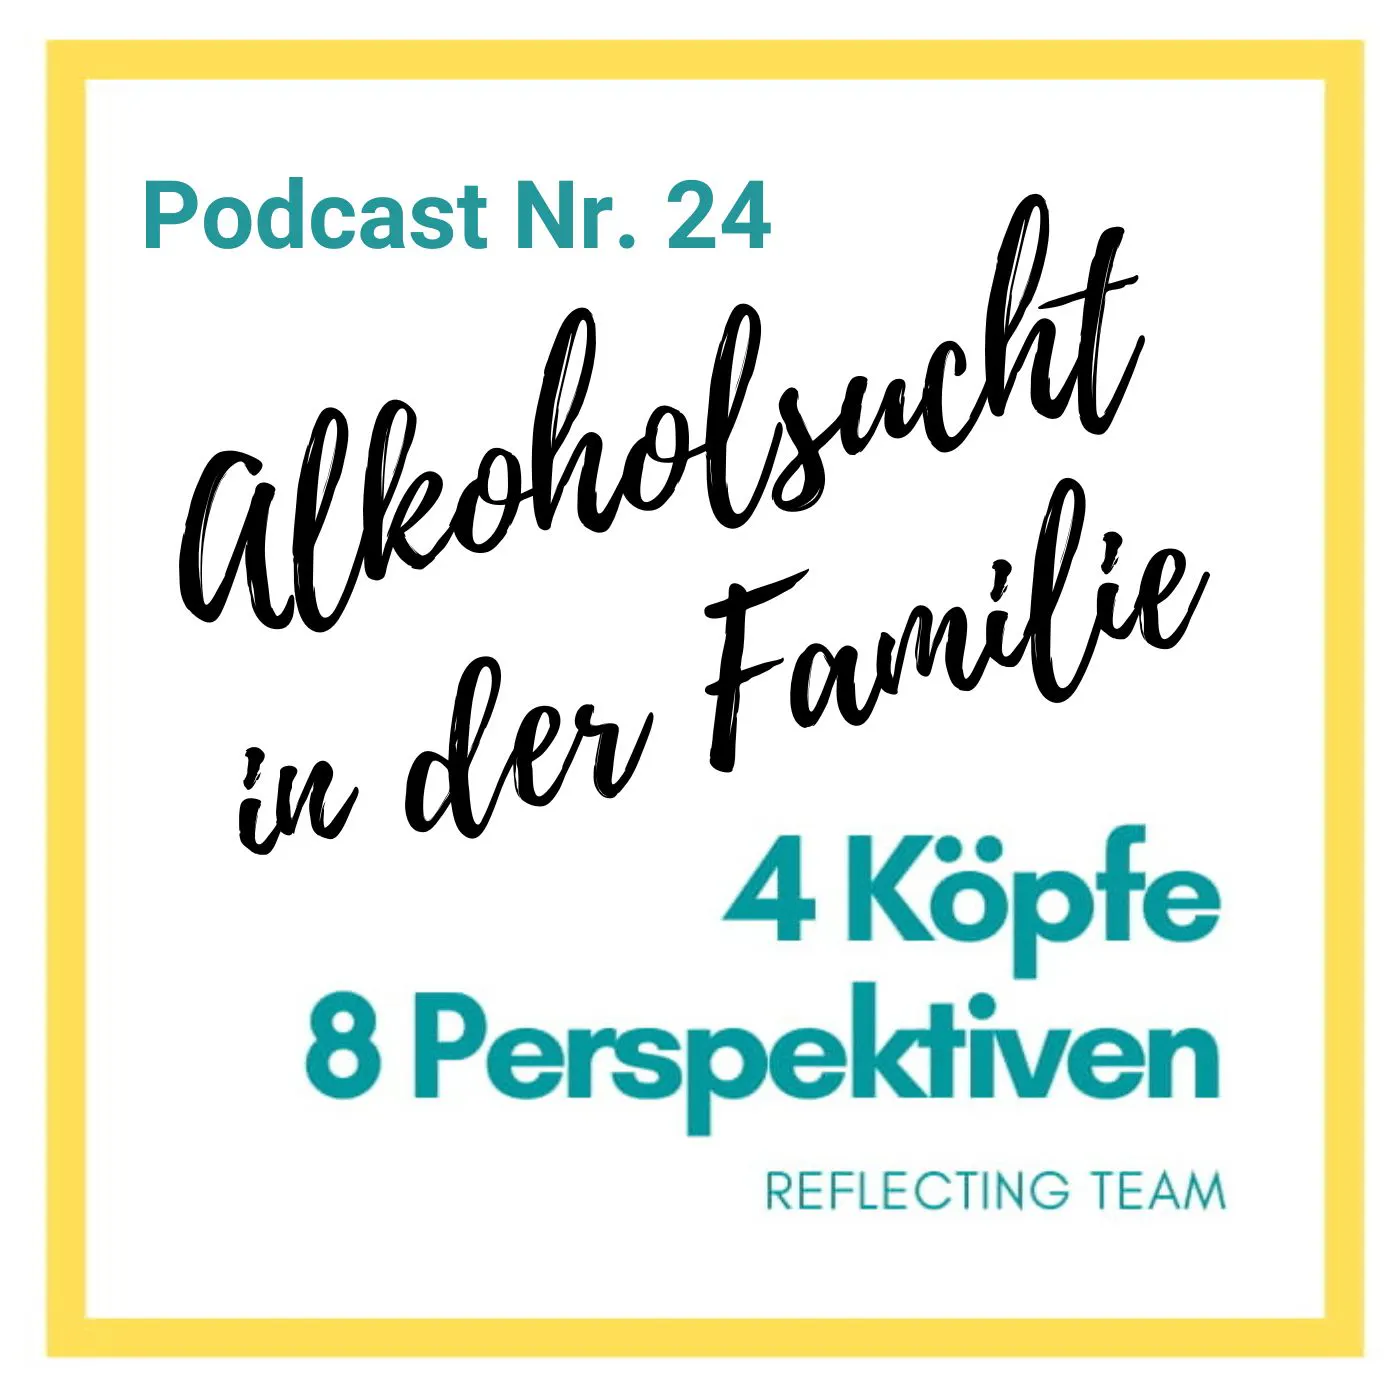 Logo mit den Informationen: 
4 Köpfe, 8 Perspektiven. Reflecting Team
Podcast Nr. 24
Thema: Alkoholsucht in der Familie